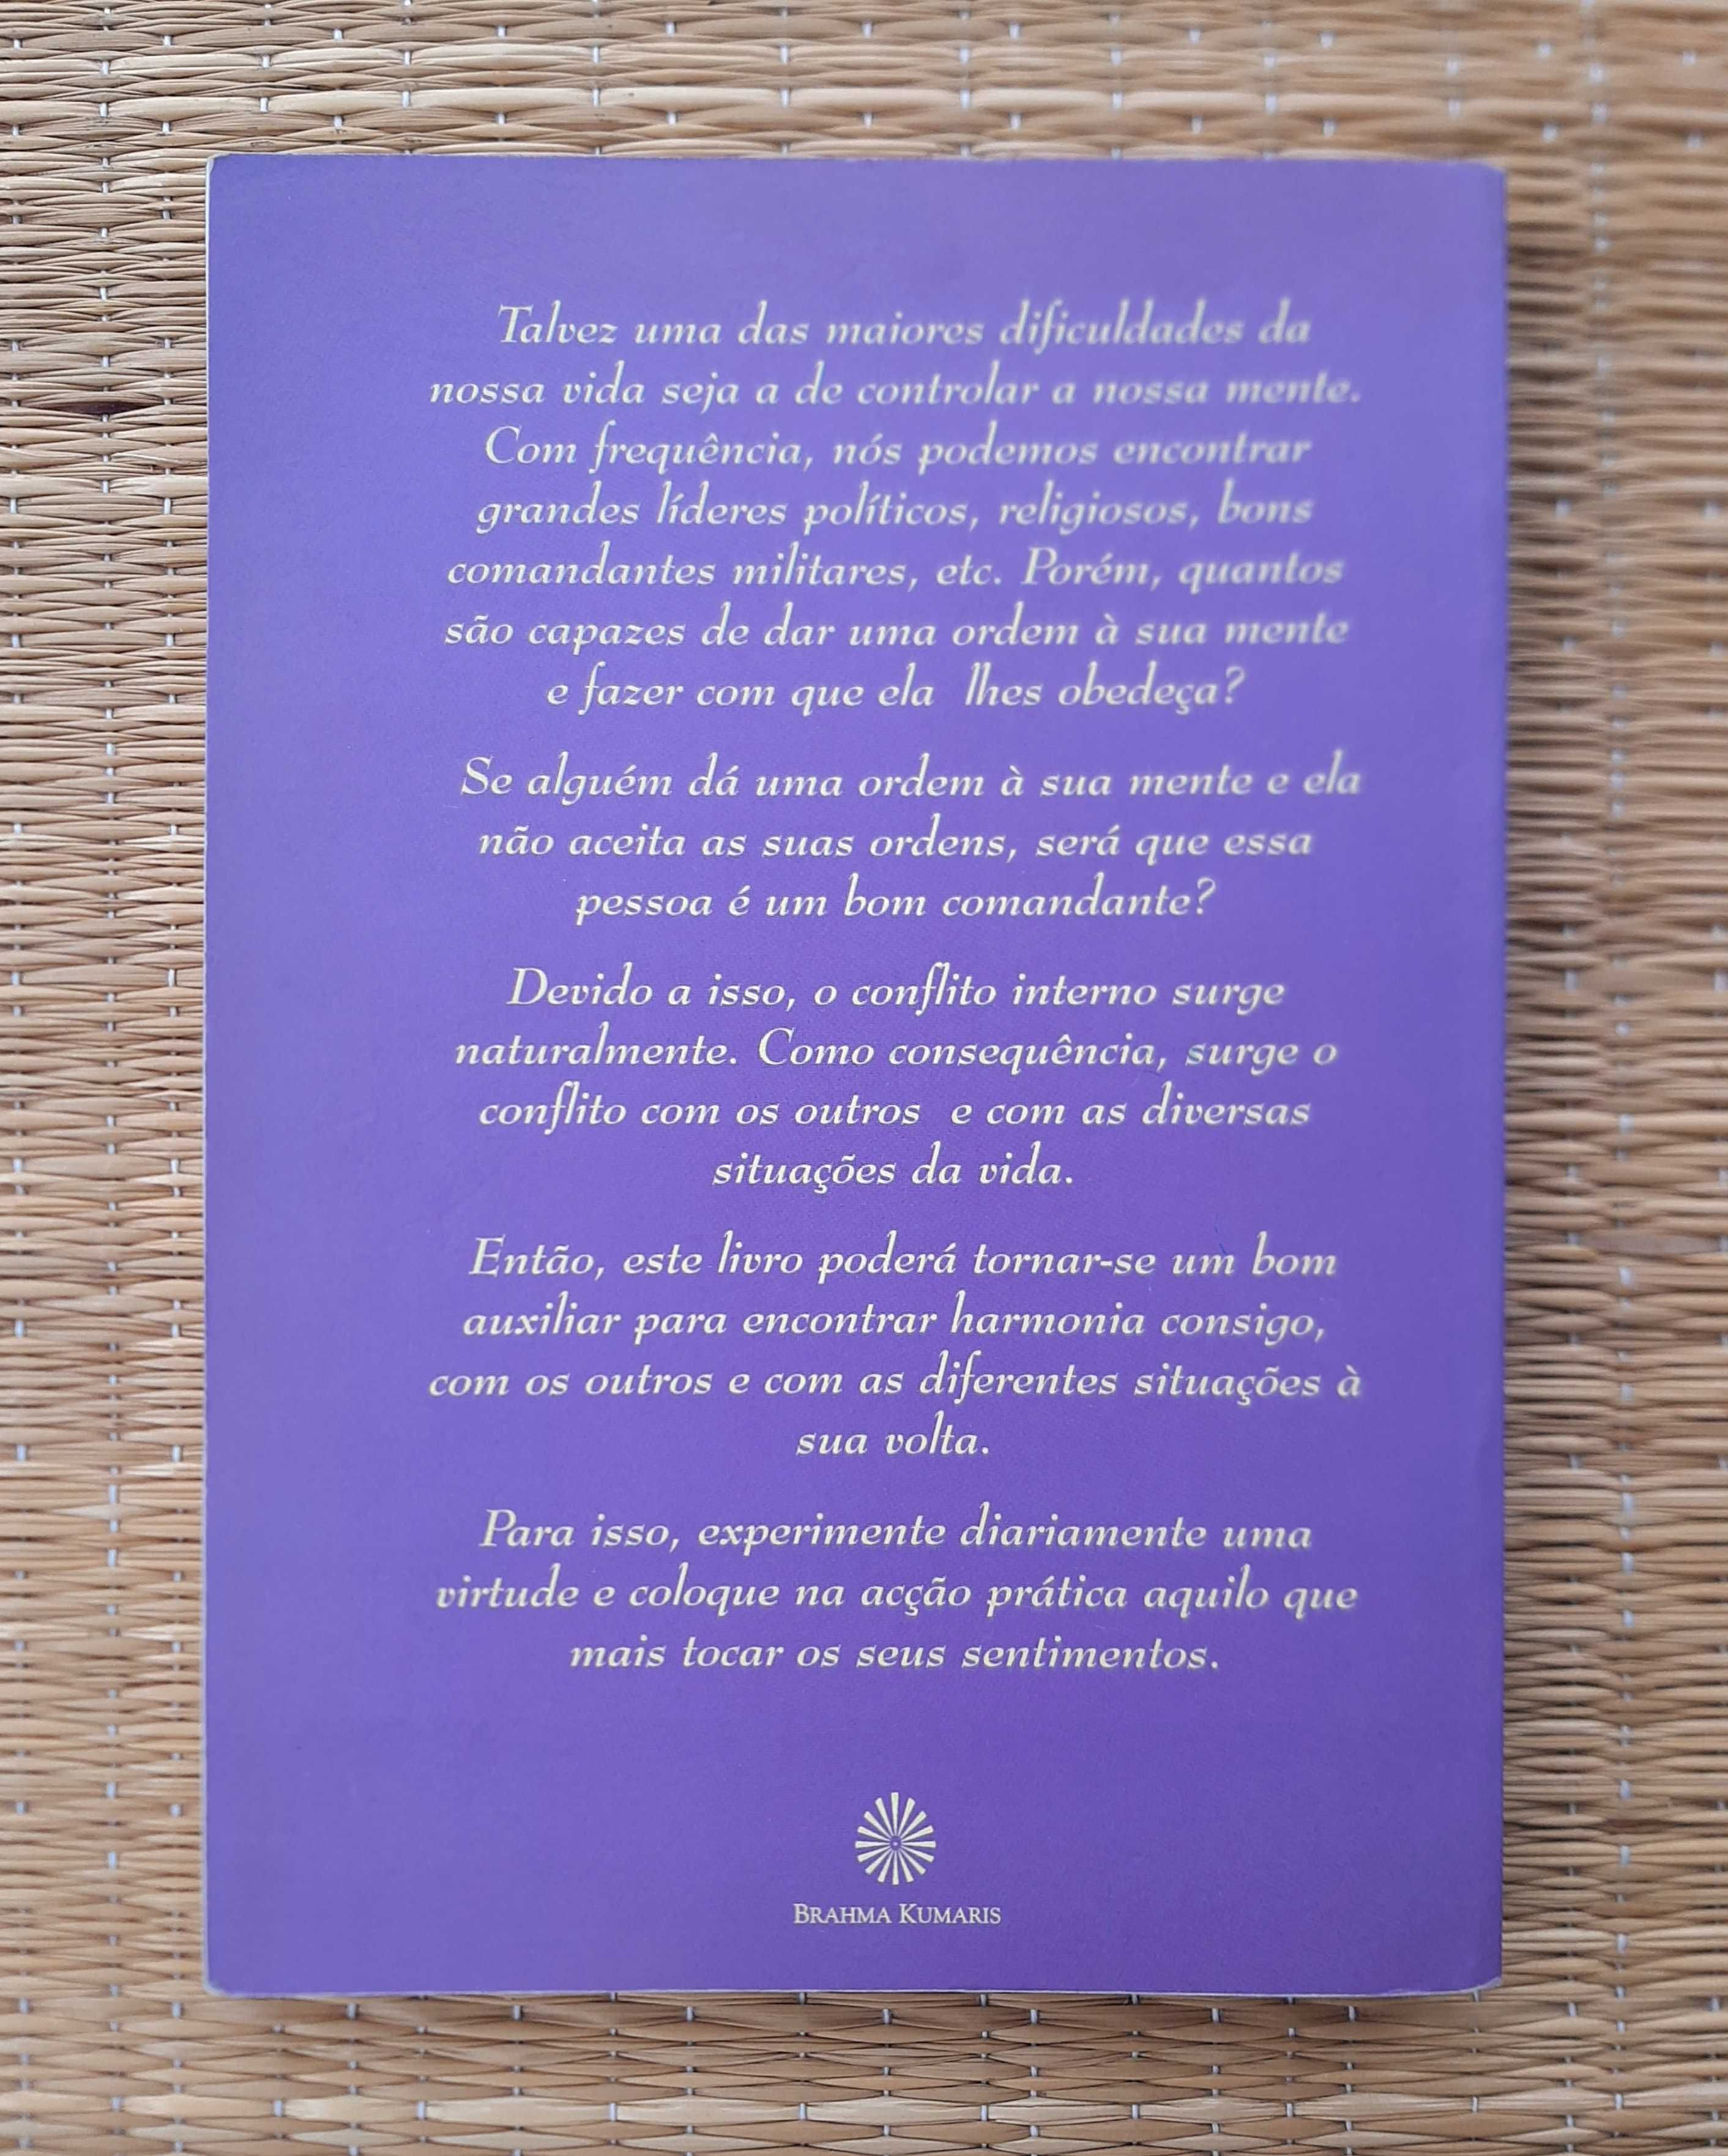 Livro "Virtudes para uma Nova Consciência" - António Sequeira